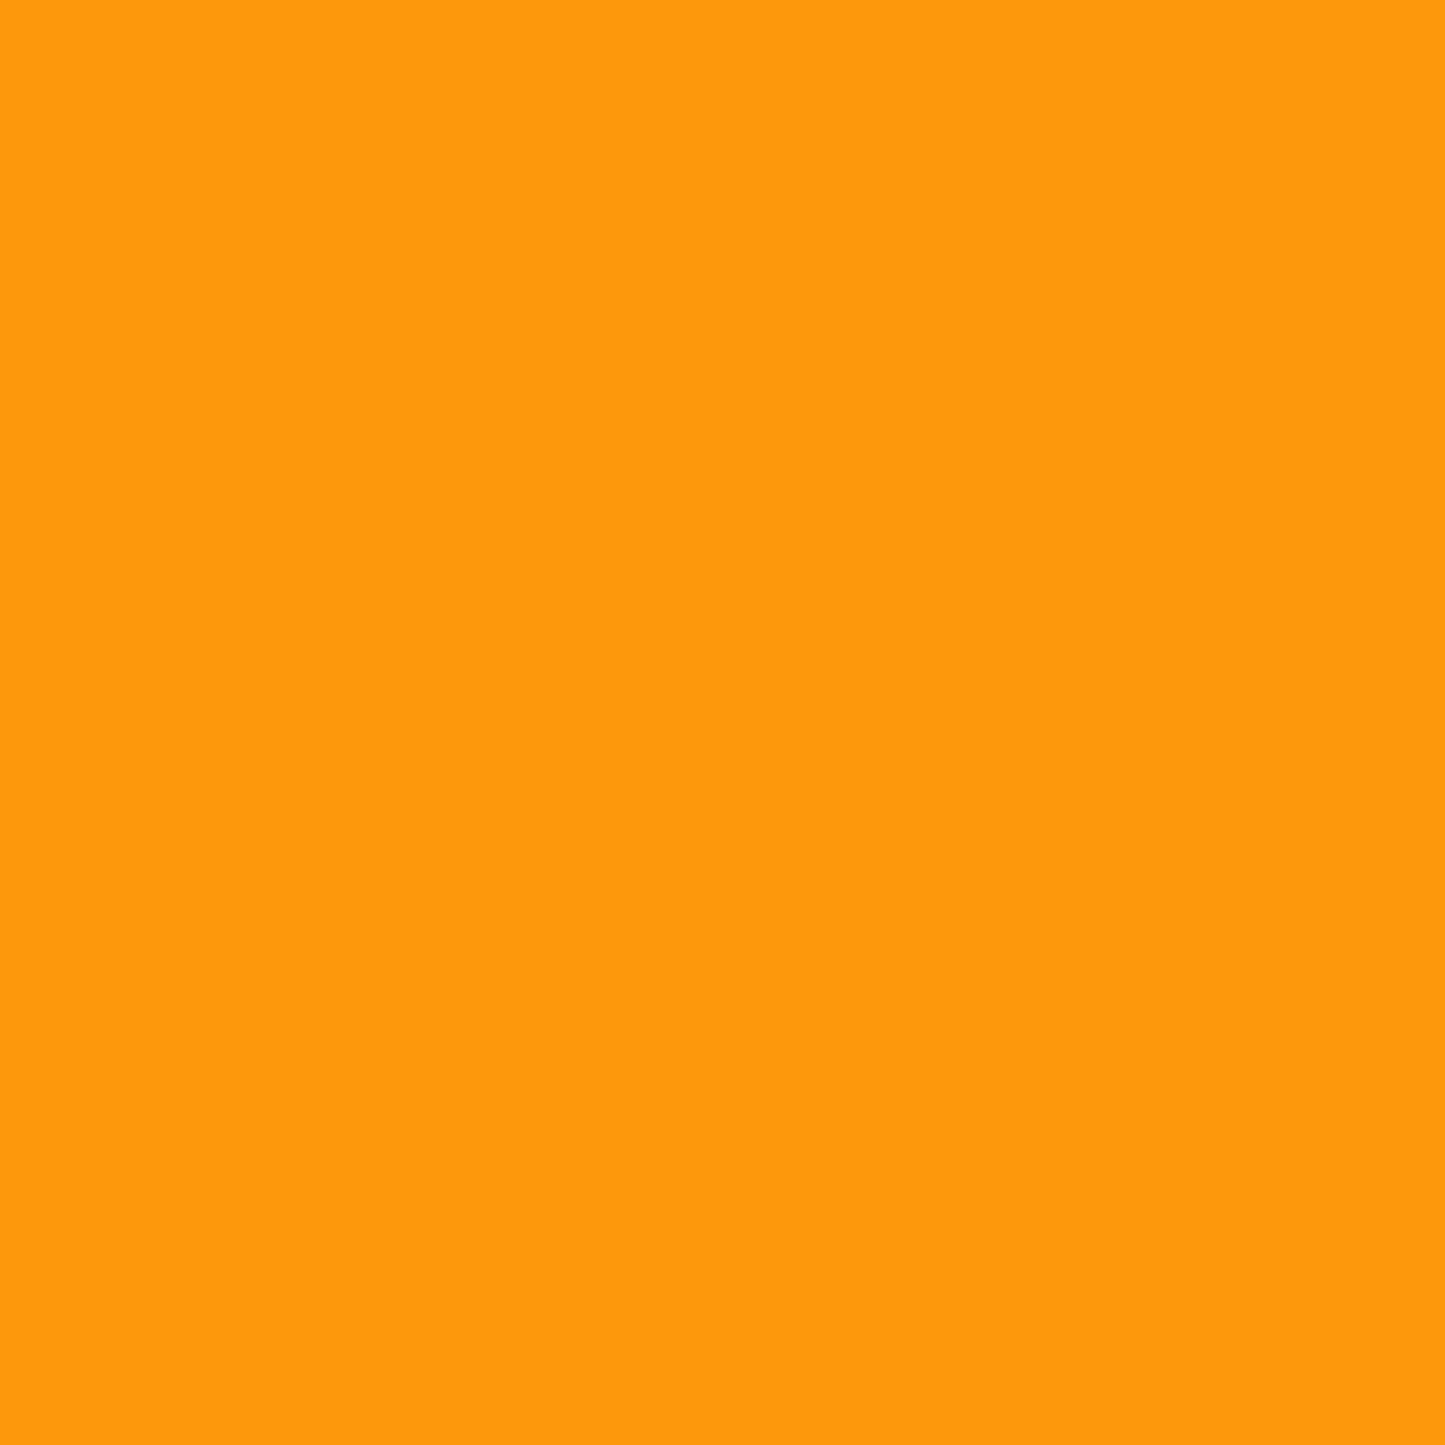 Papiers numériques "Palette d'Orange" - 12" x 12" - 300 DPI - Set de 10 images - A télécharger